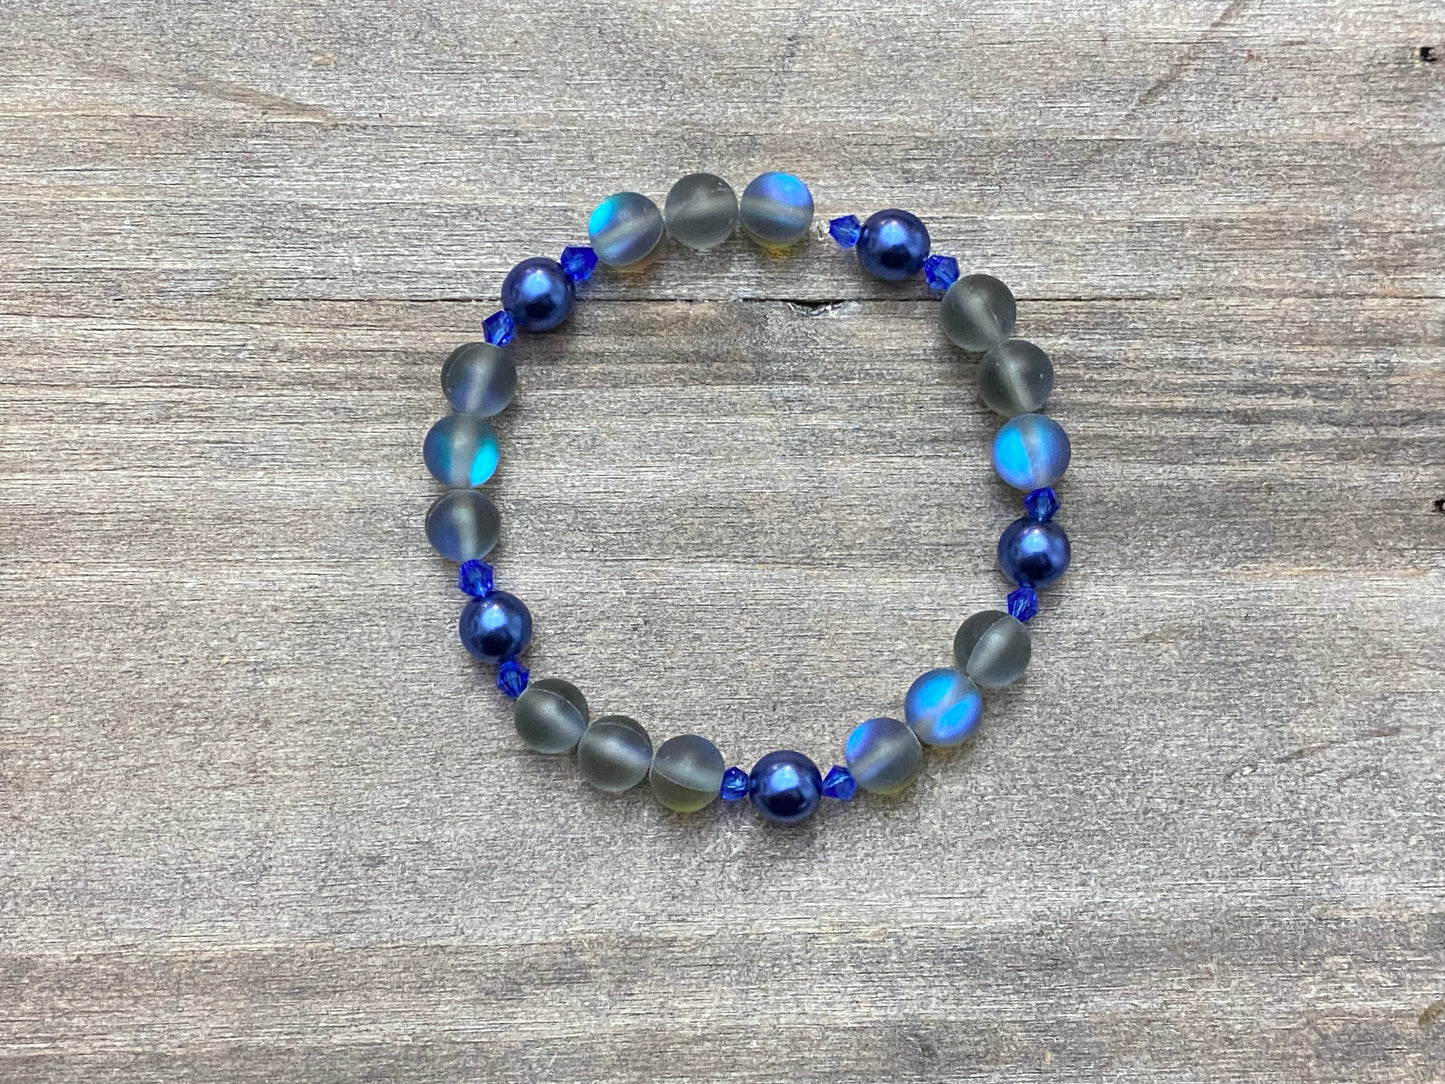 Metallic Blue Mermaid Bracelet